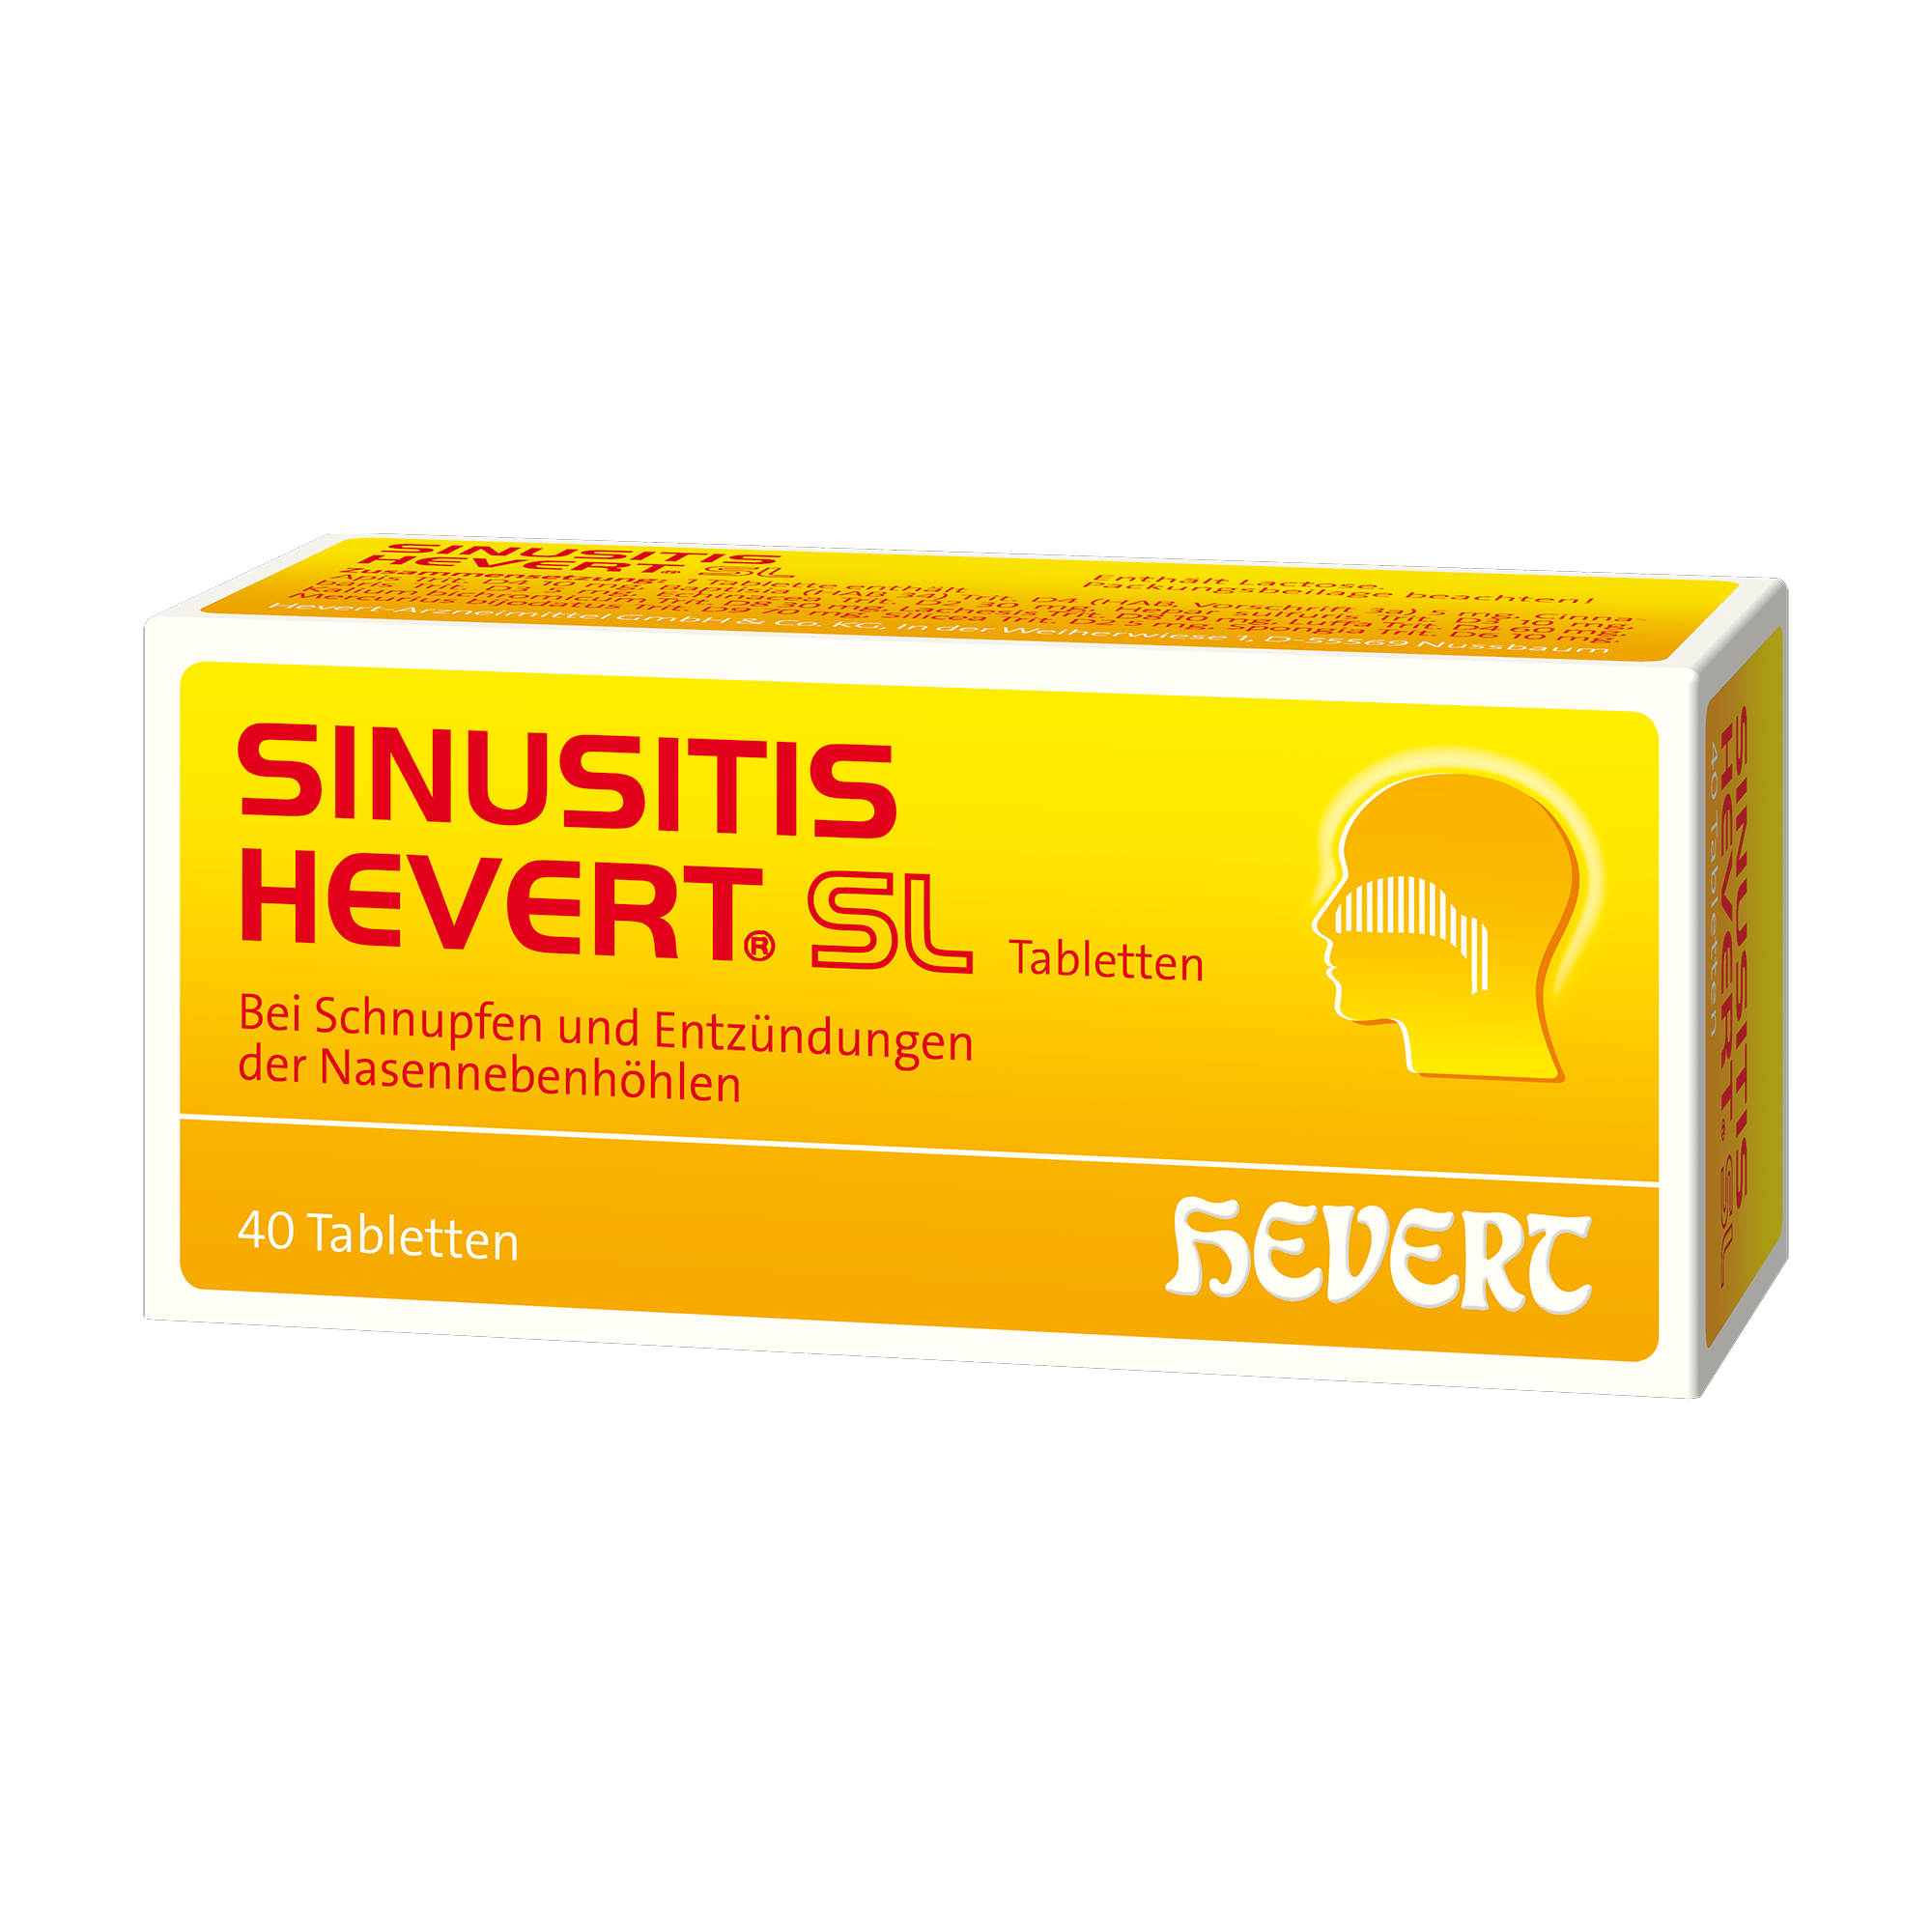 Sinusitis Hevert SL, 40 St. Tabletten Hevert-Testen